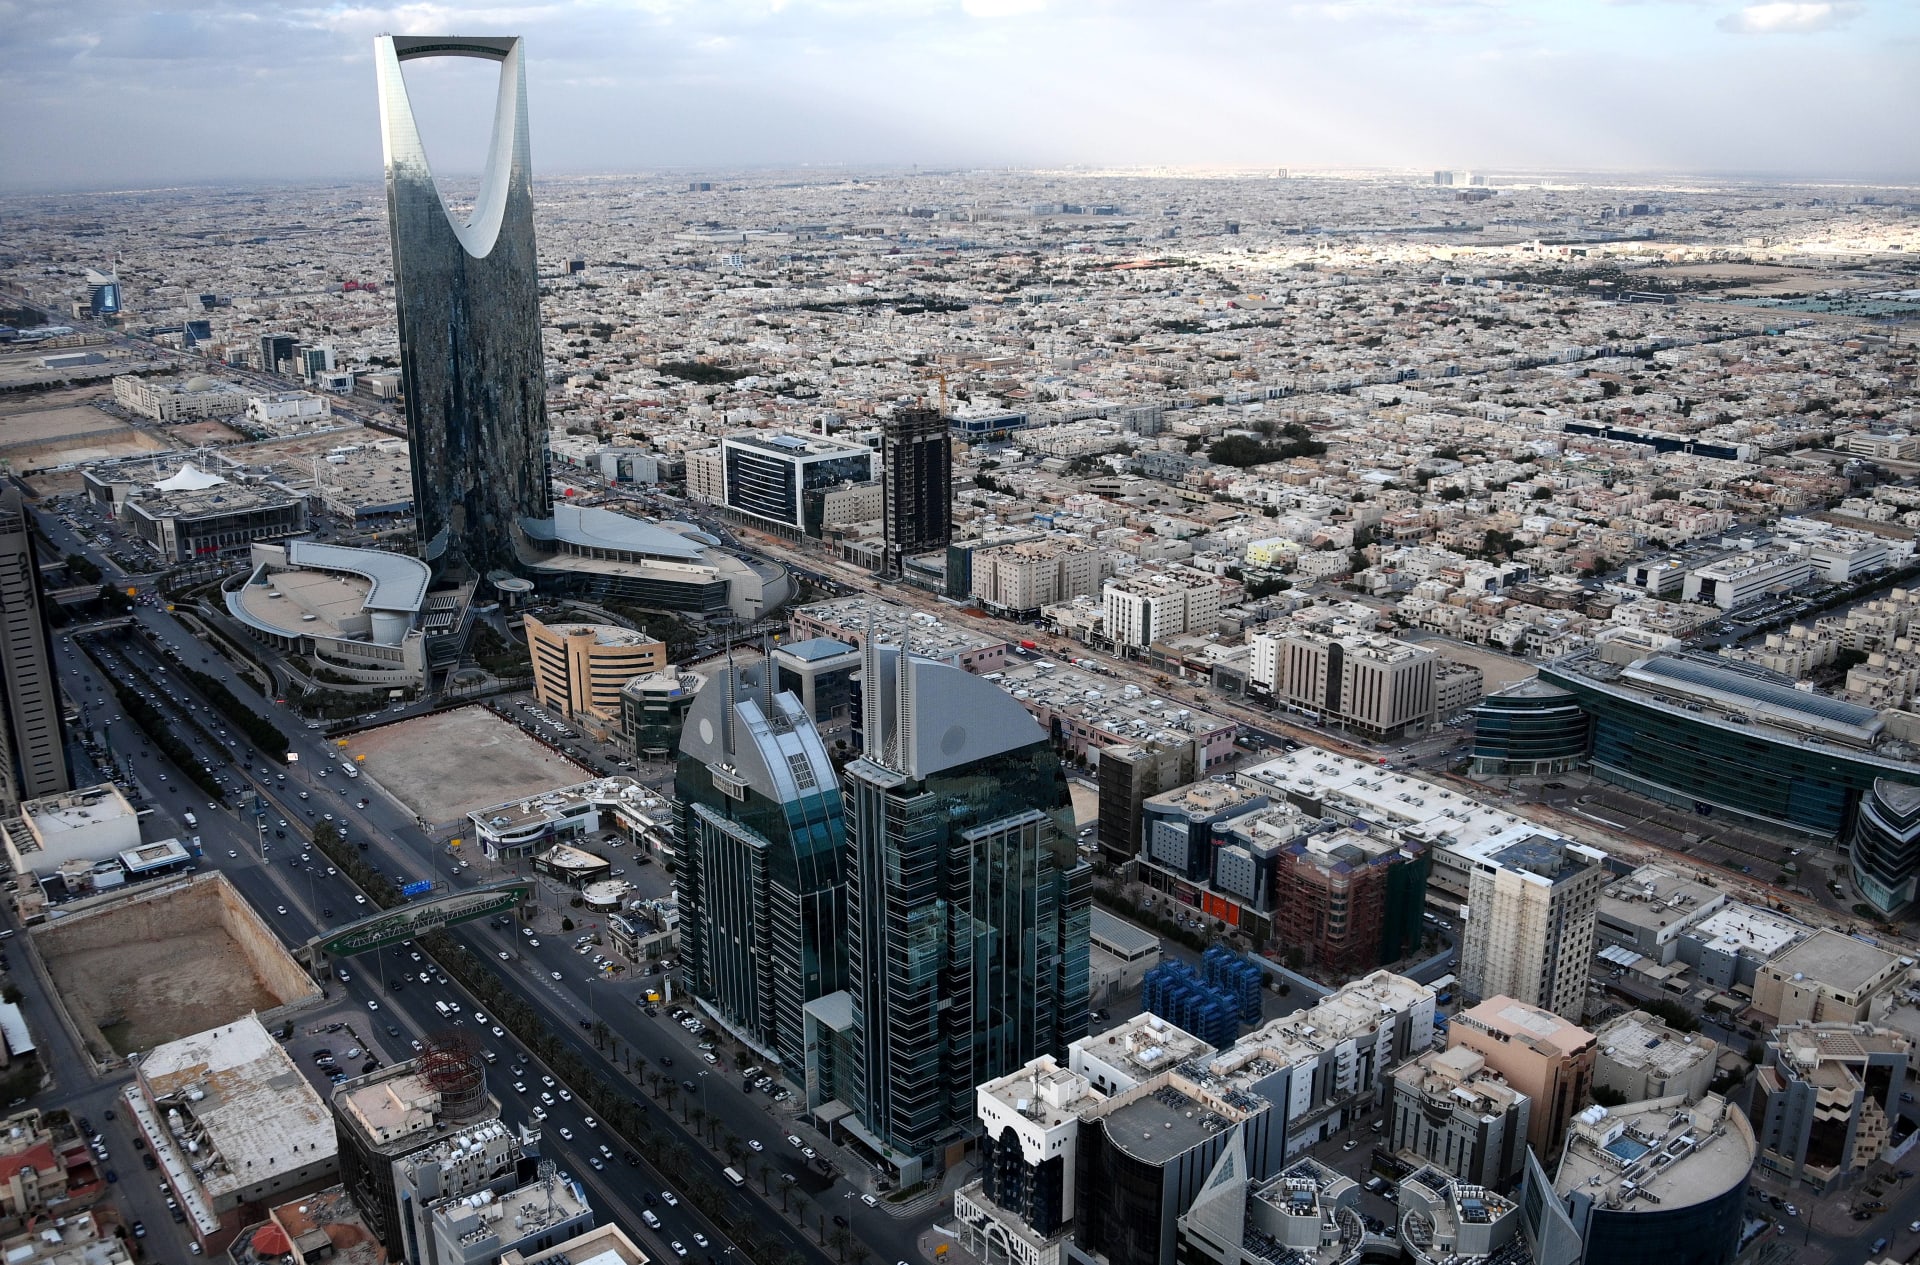 السعودية.. تداول فيديو اعتداء على موظف في الرياض وتفاعل على تحرك الأمن العام